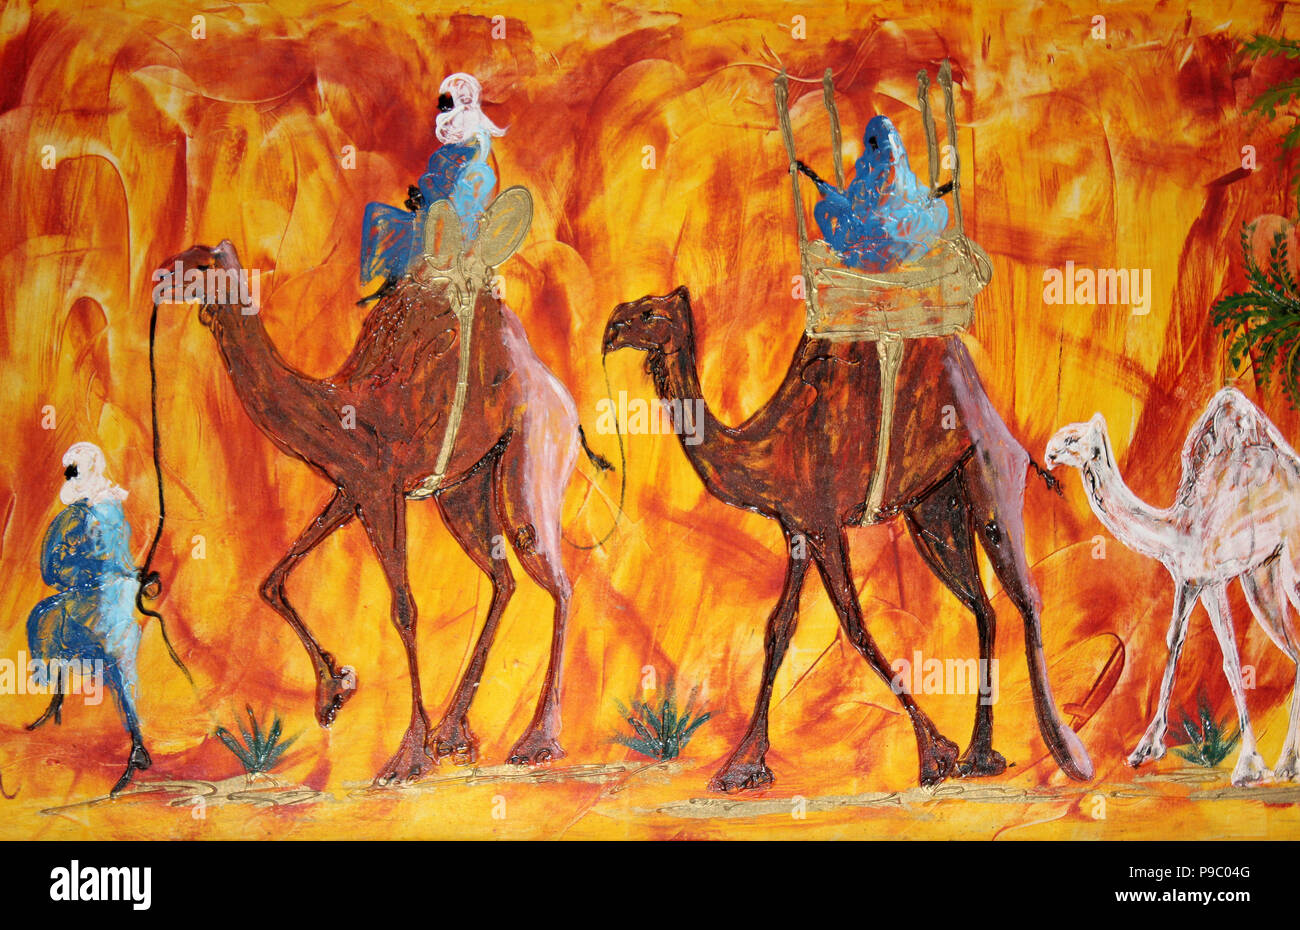 Voyageant sur des chameaux bédouin Artwork Banque D'Images